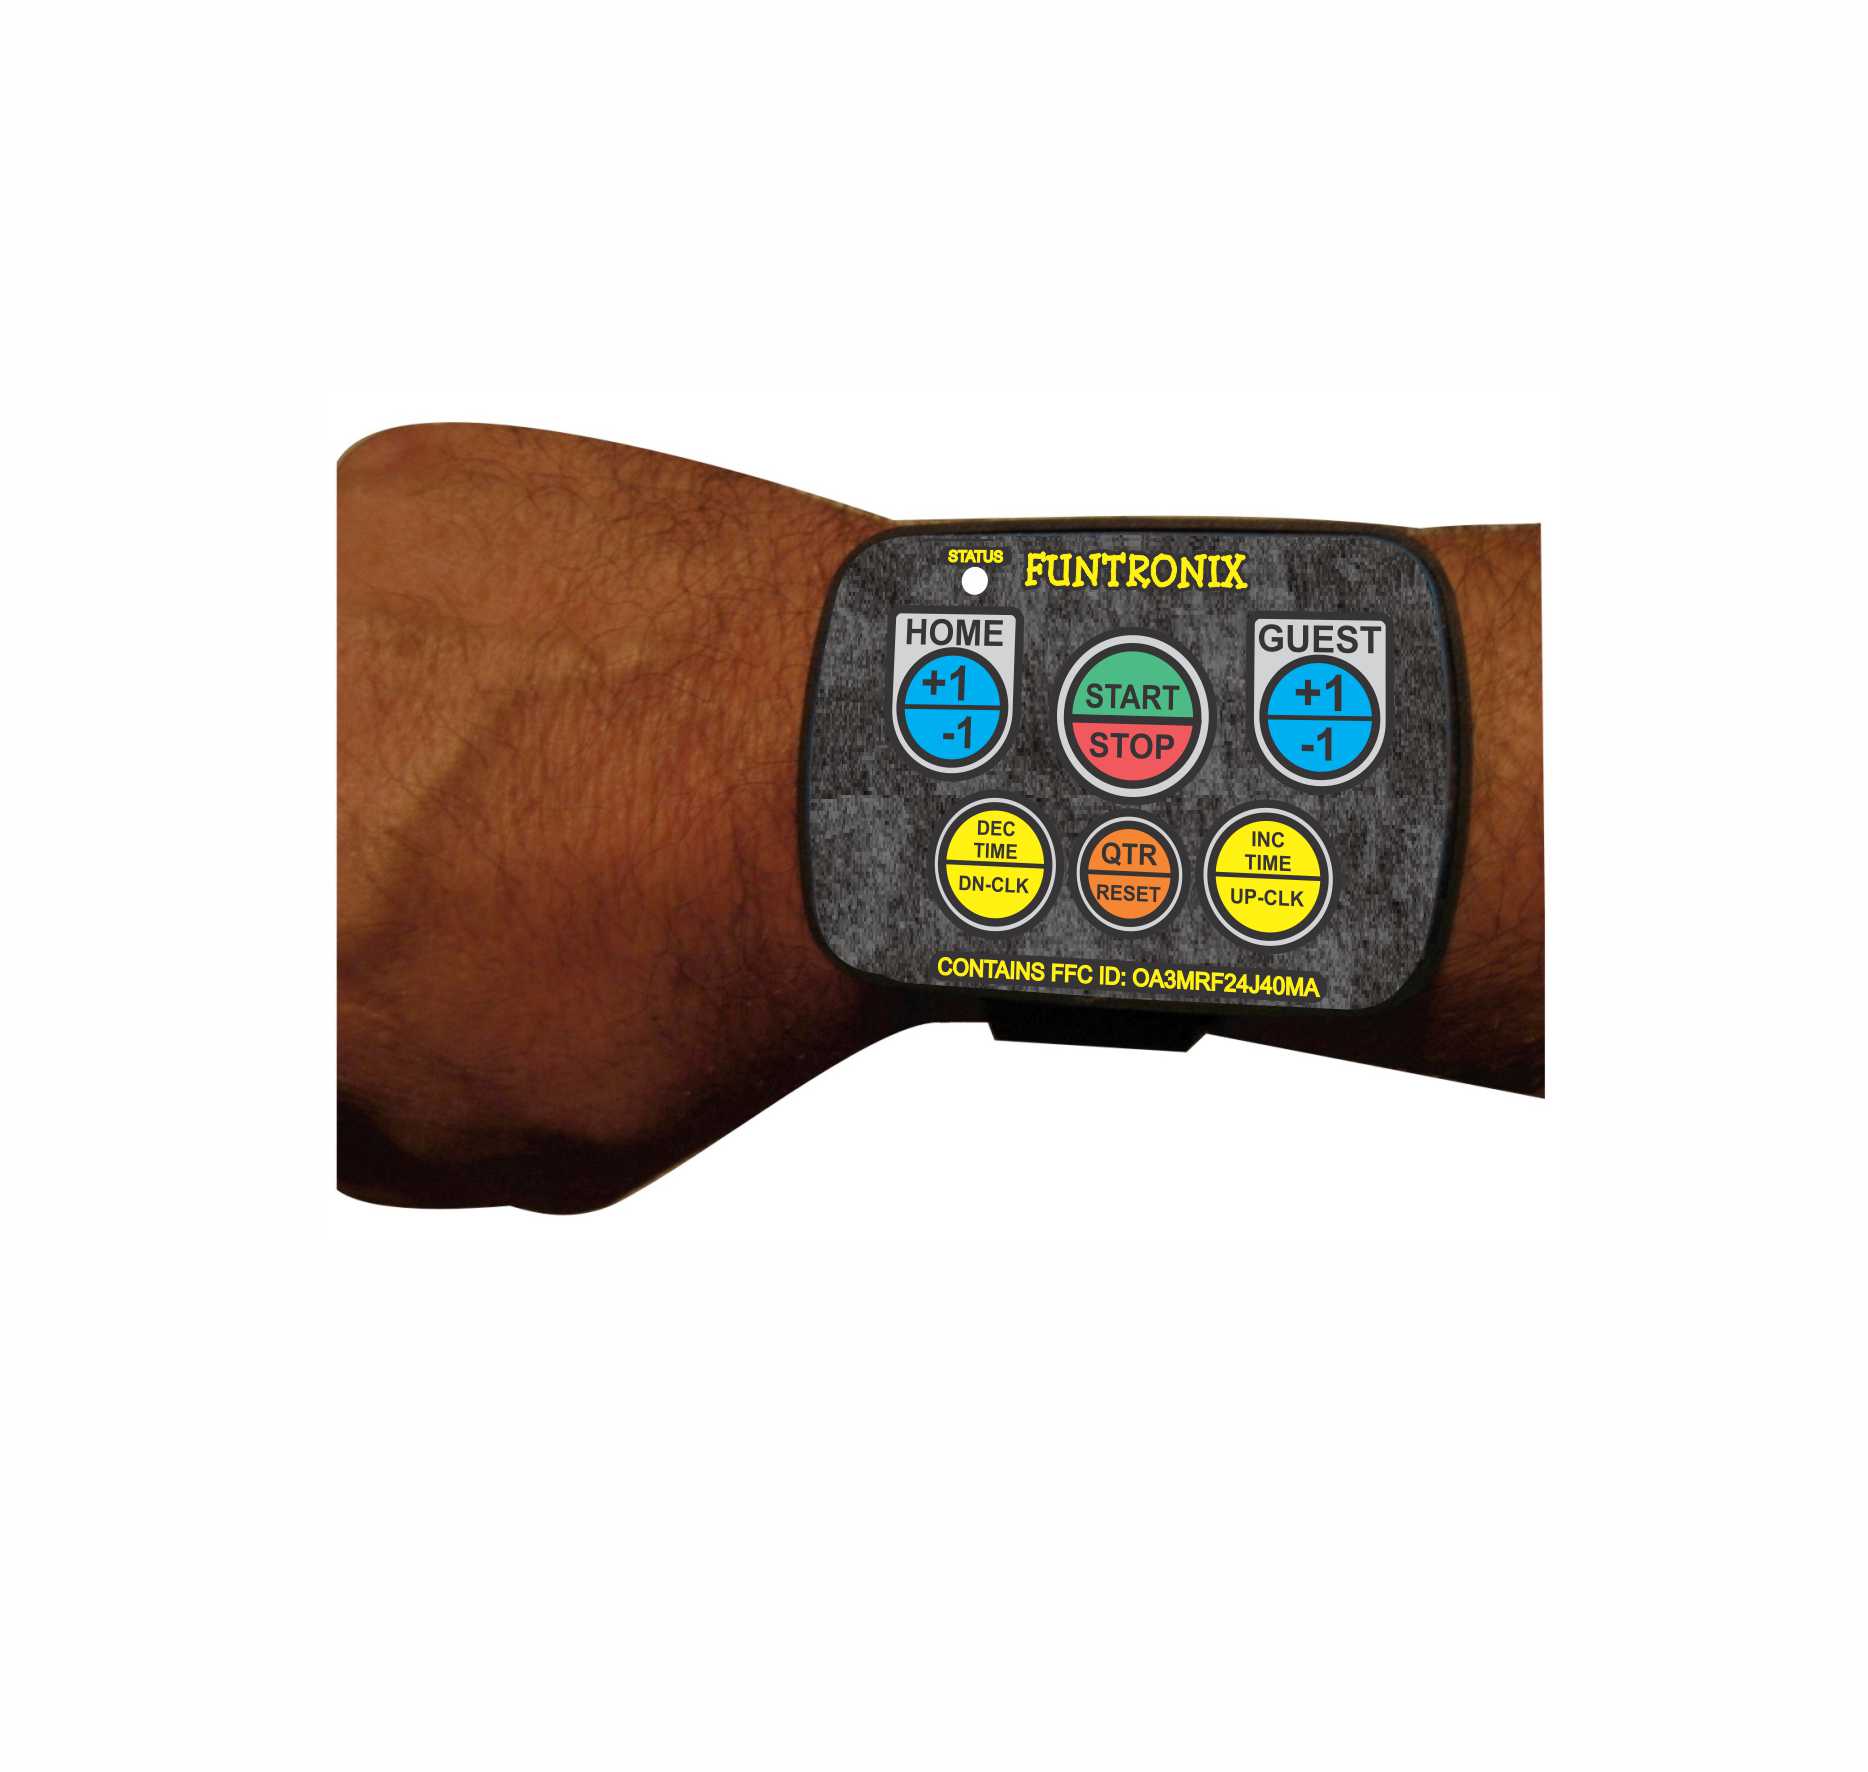 Wrist-remote controller